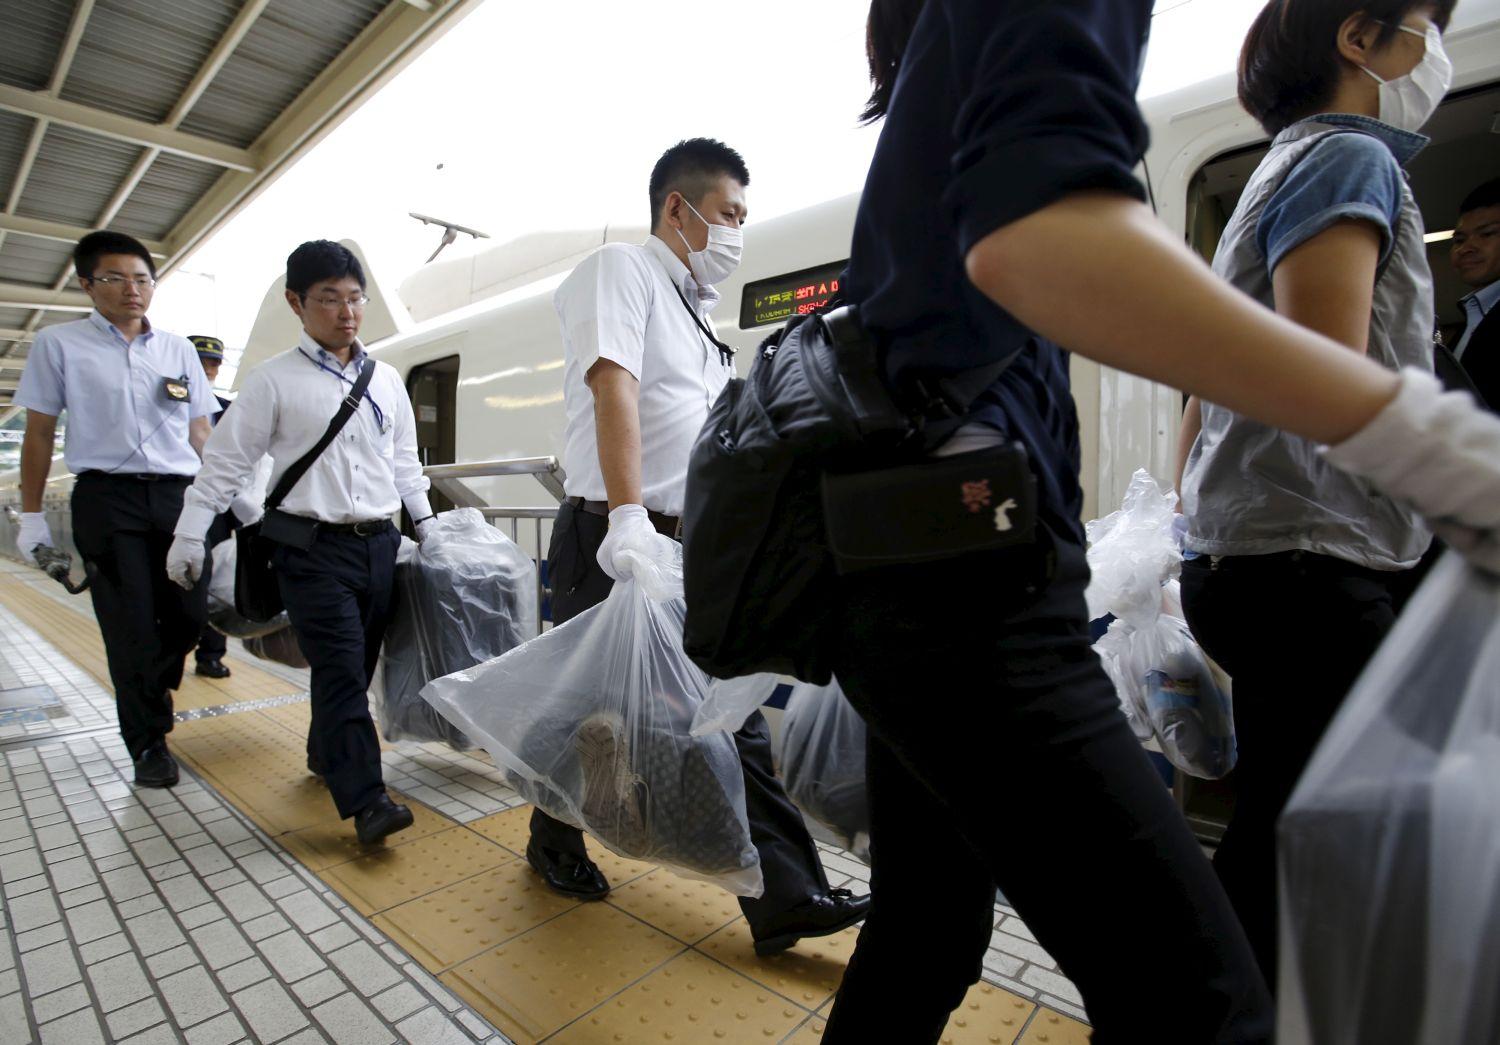 Rendőrök cipelik az utasok poggyászait a tragédia után